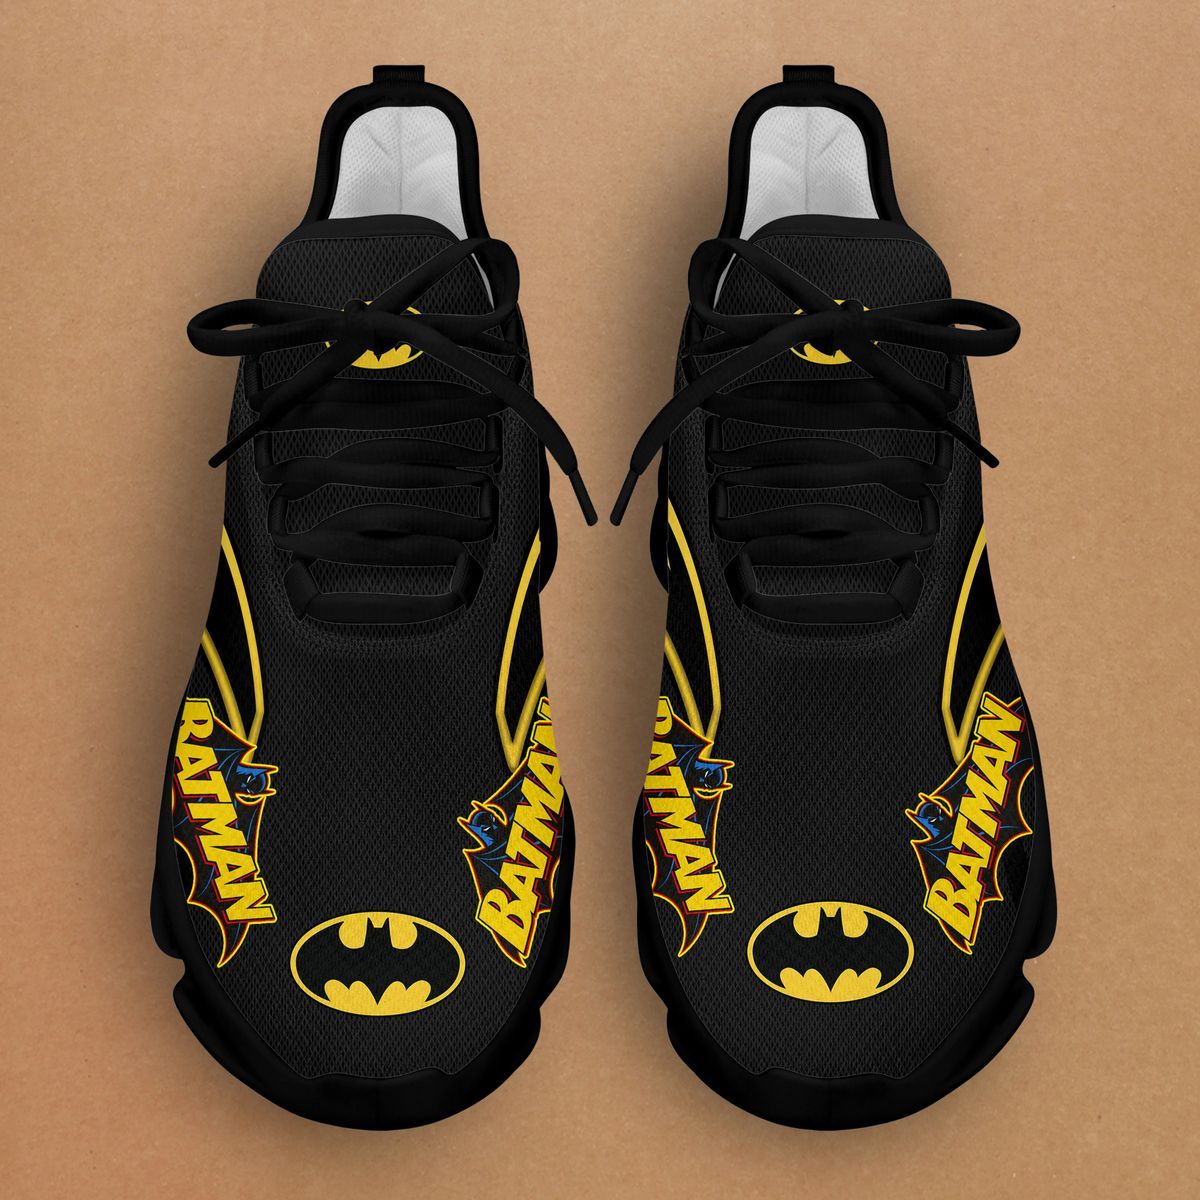 Batman Clunky Max soul shoes 1